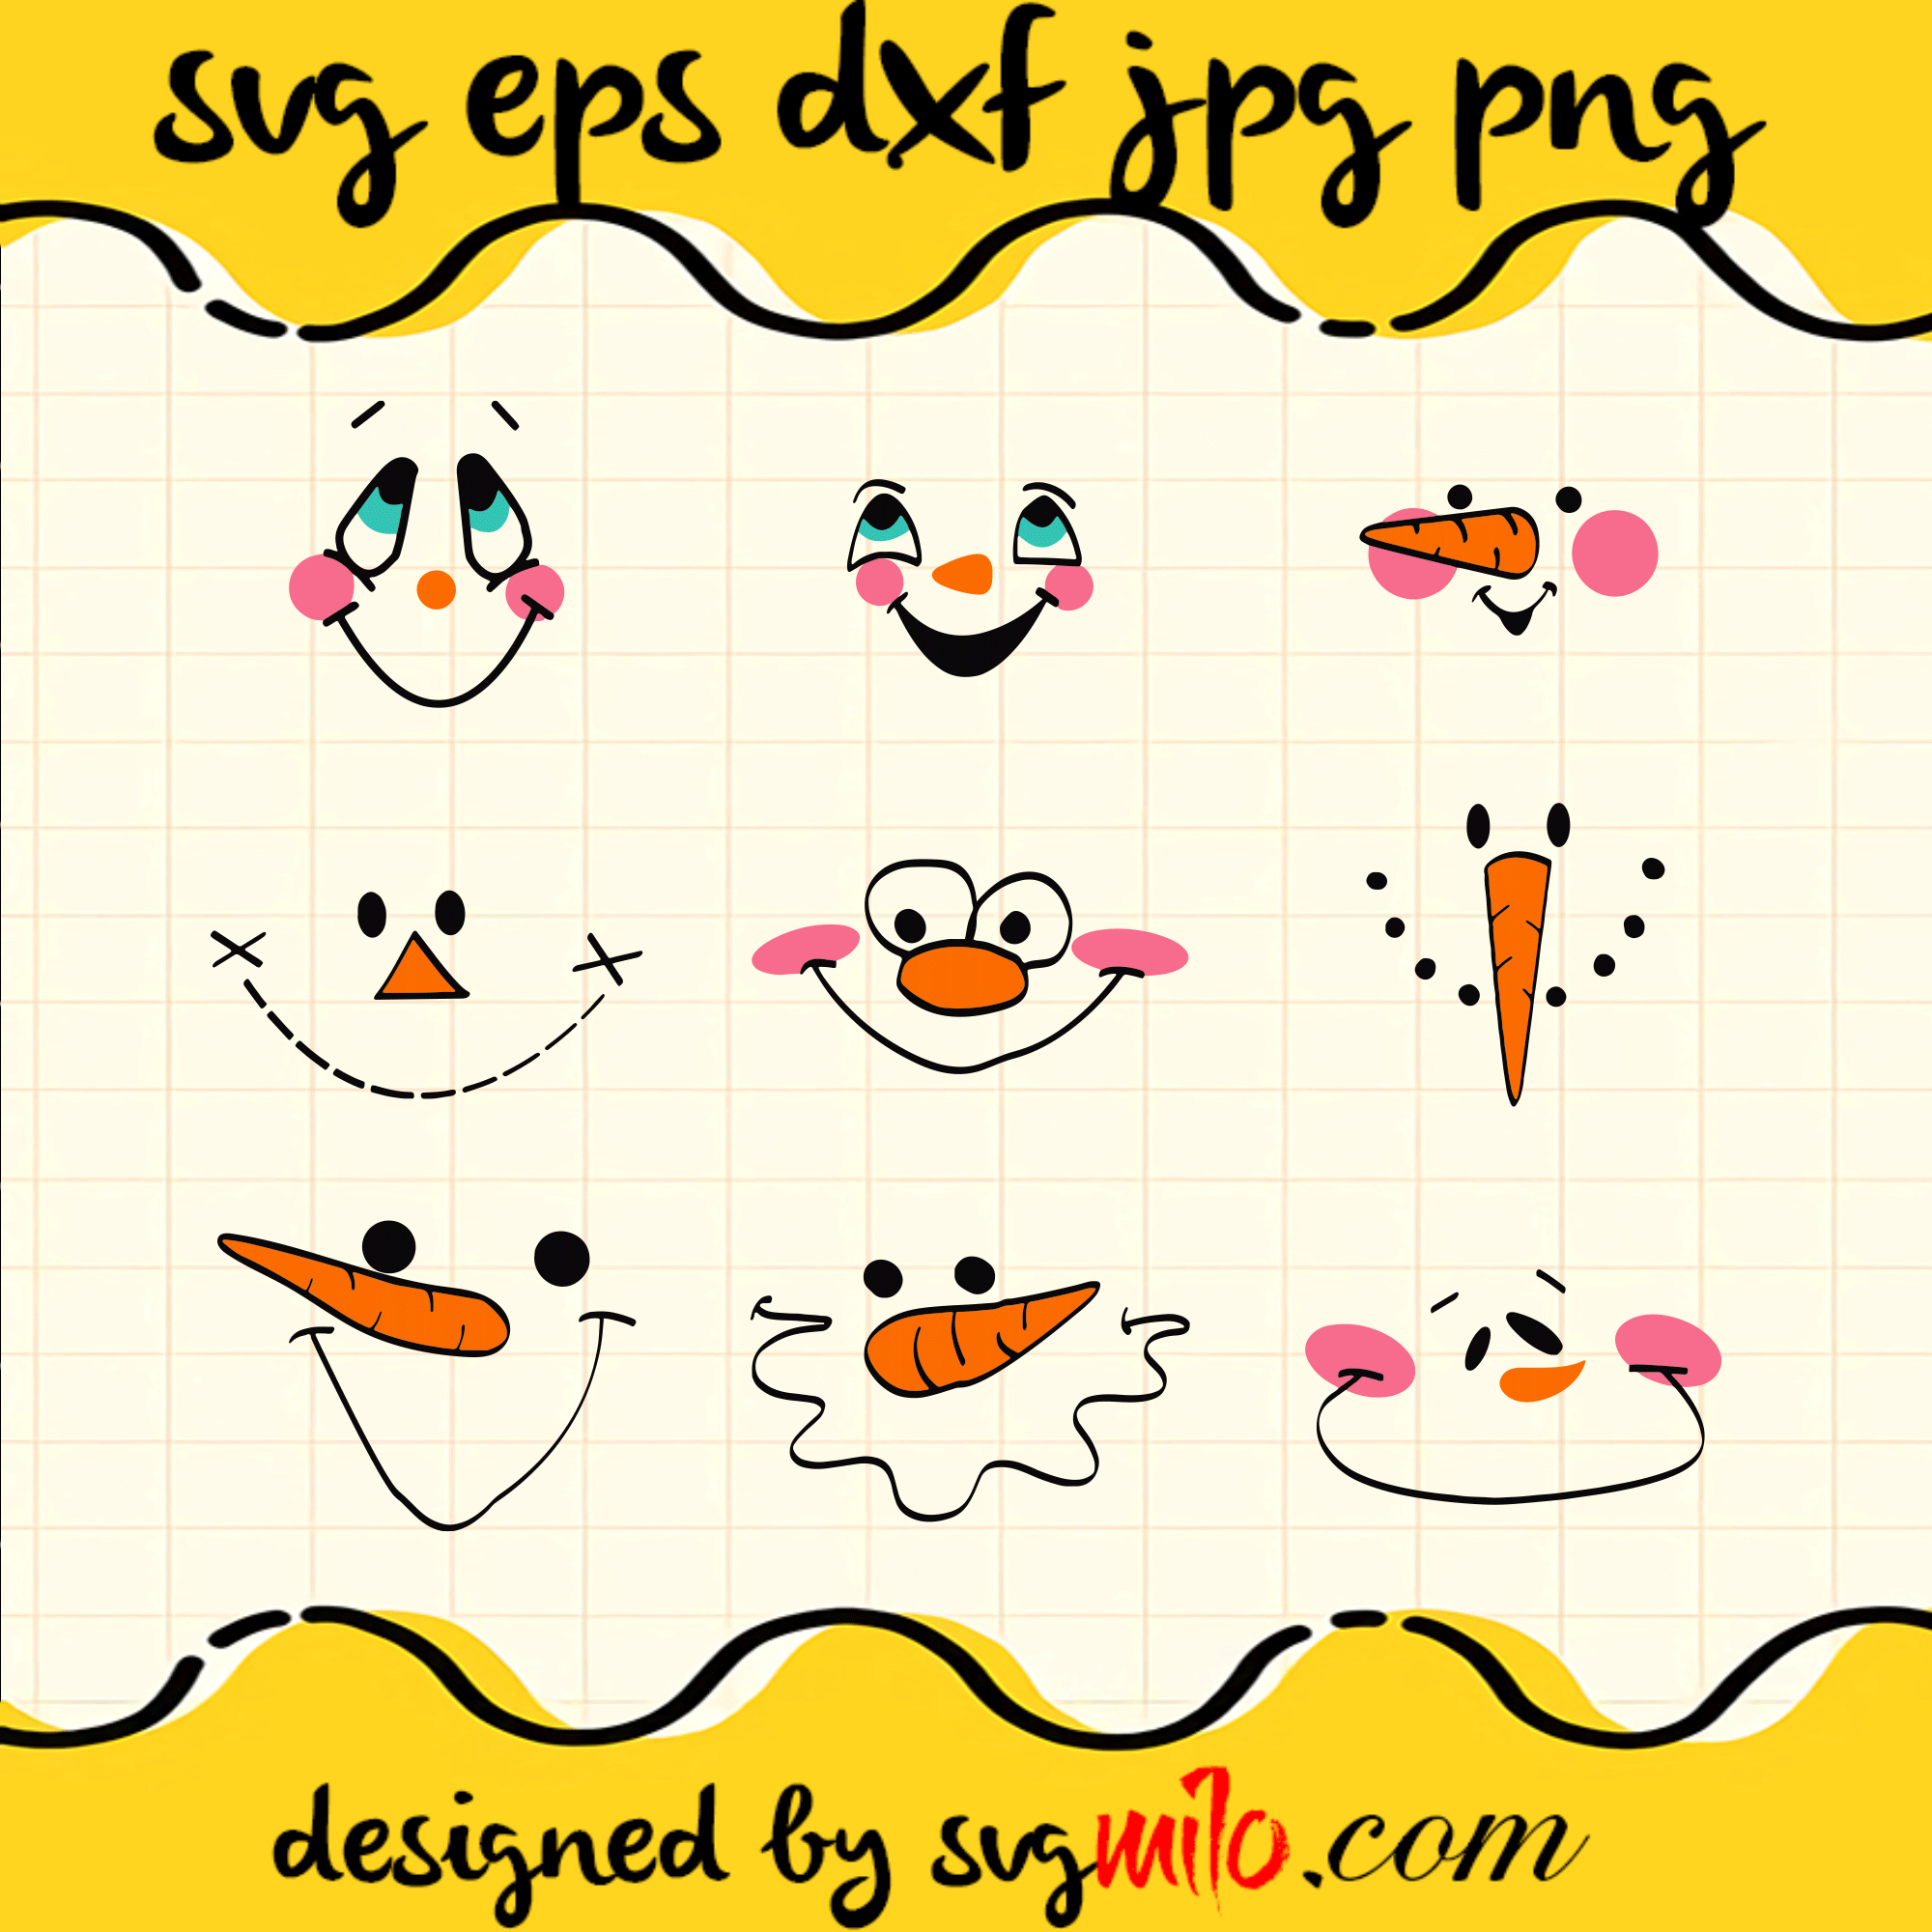 Snowman Face SVG, Snowman SVG, Christmas SVG, EPS, PNG, DXF, Premium Quality - SVGMILO